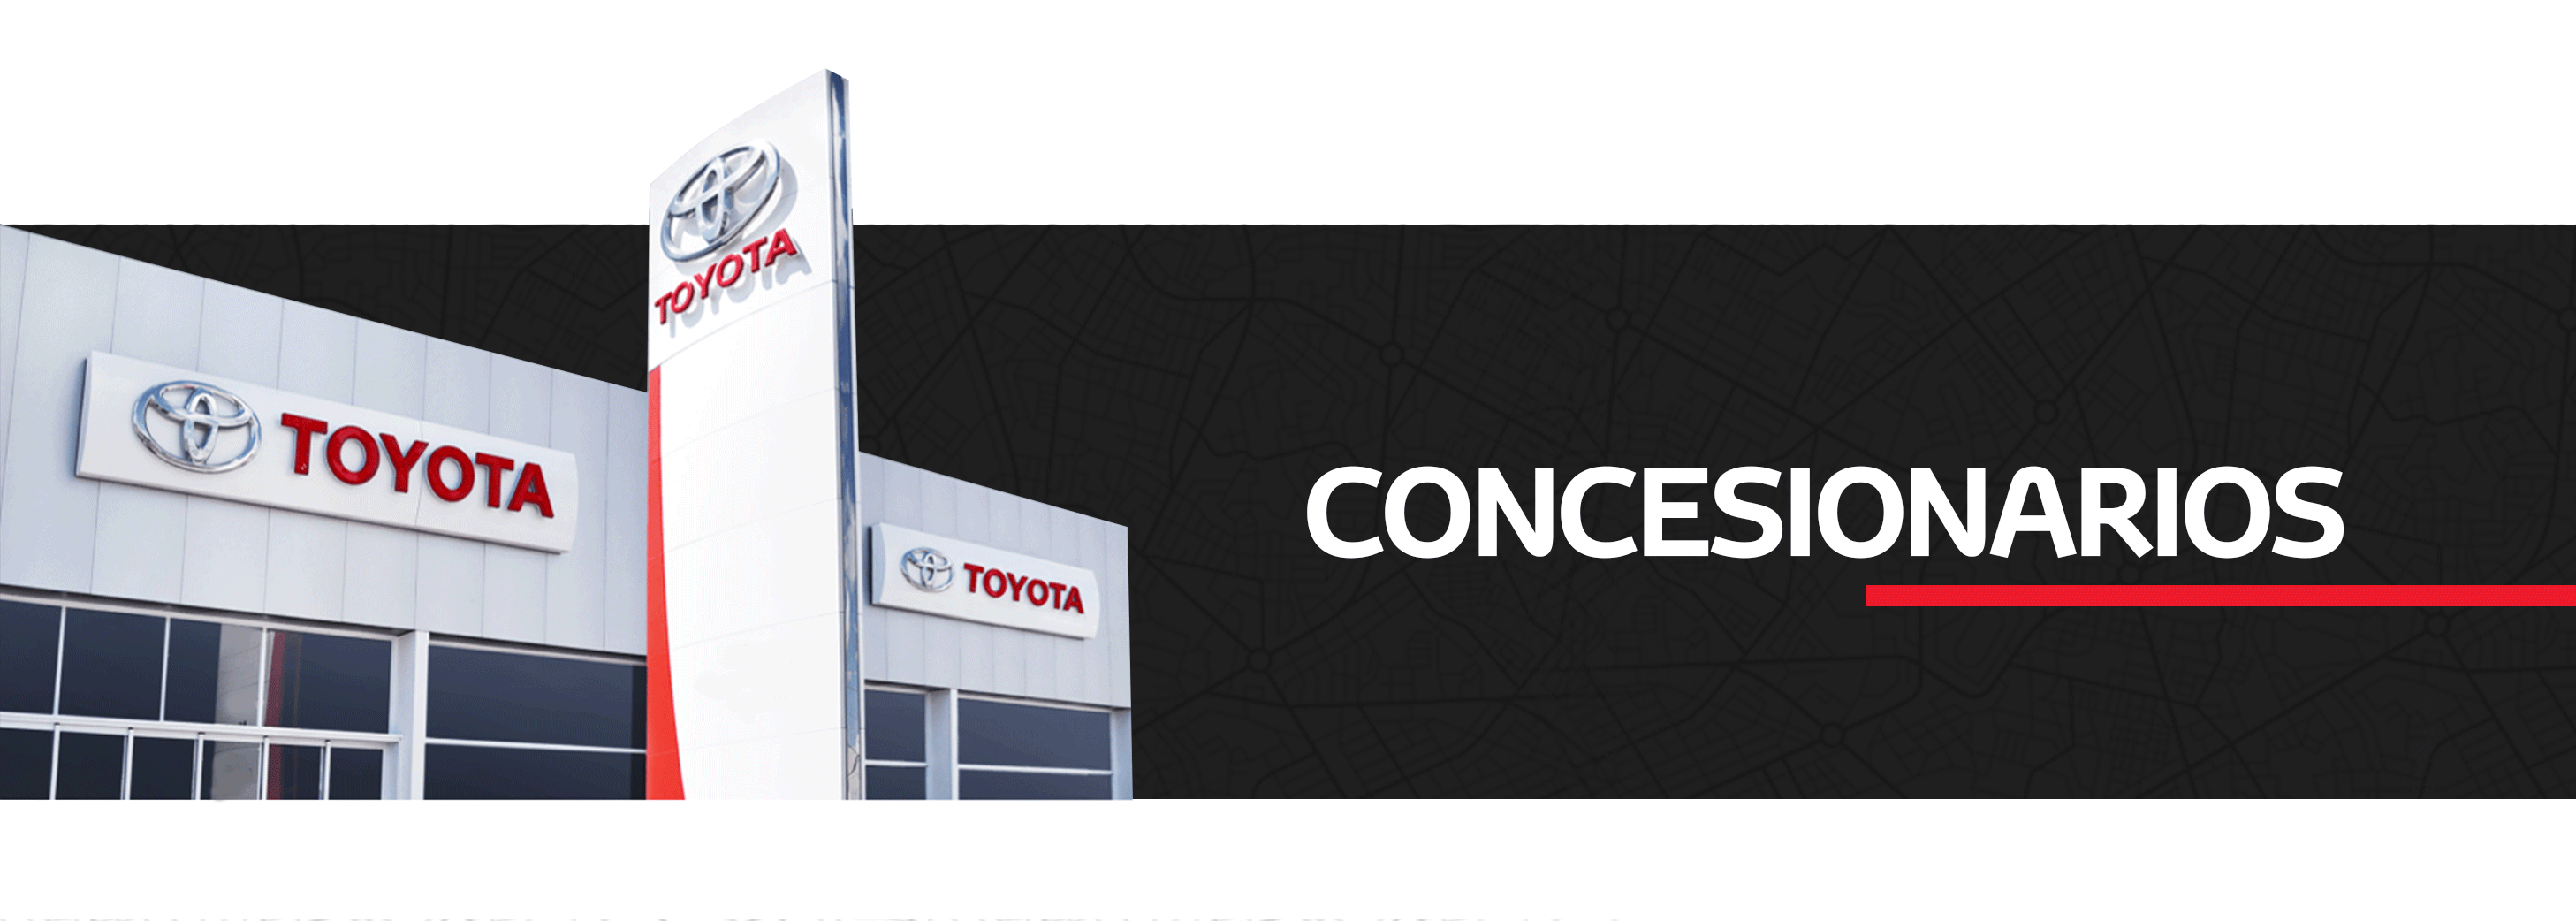 Concesionarios | Concesionarios | Toyota Venezuela